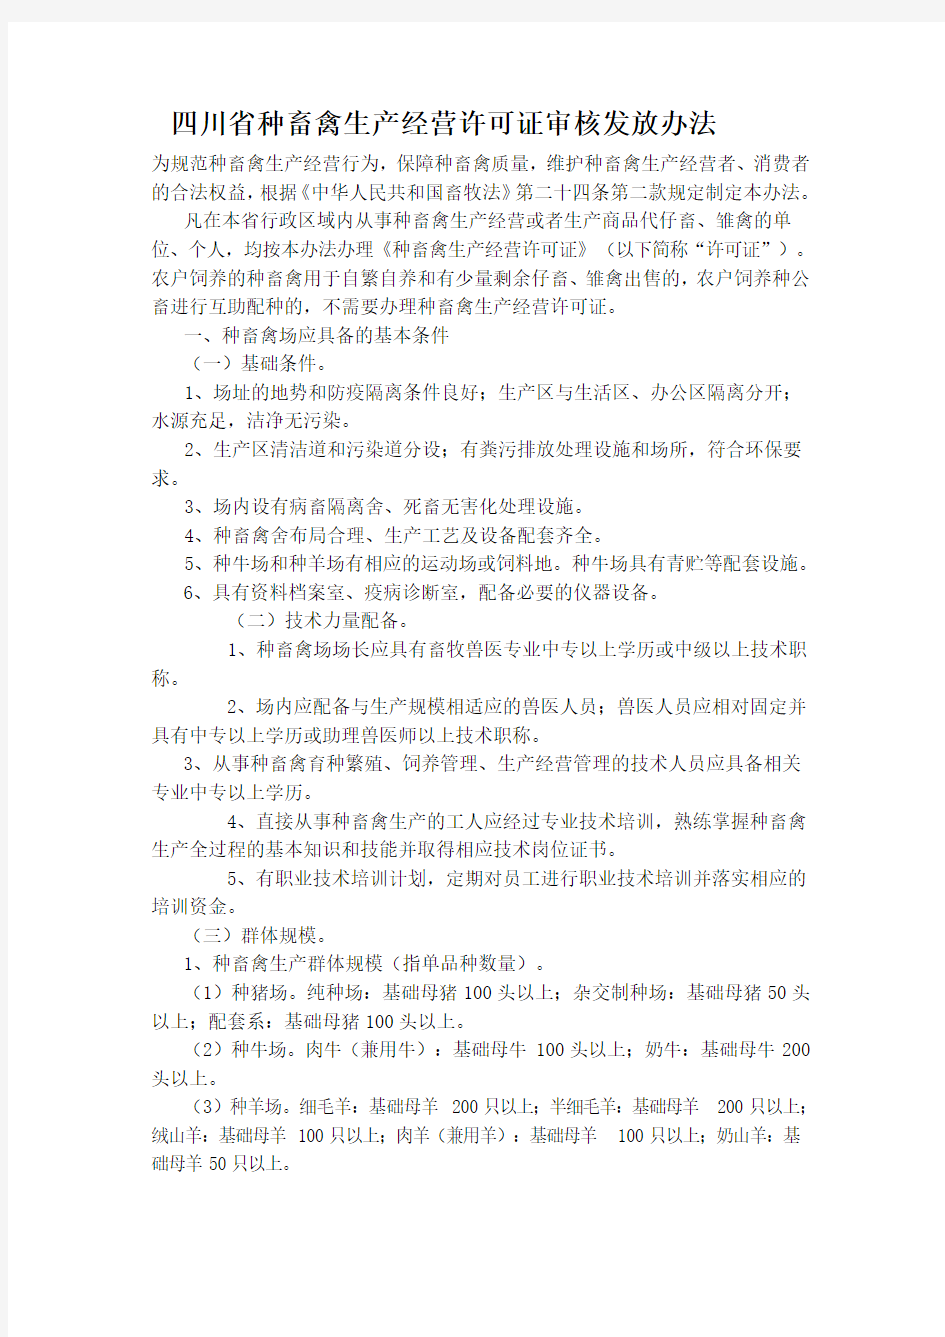 四川省种畜禽生产经营许可证审核发放办法